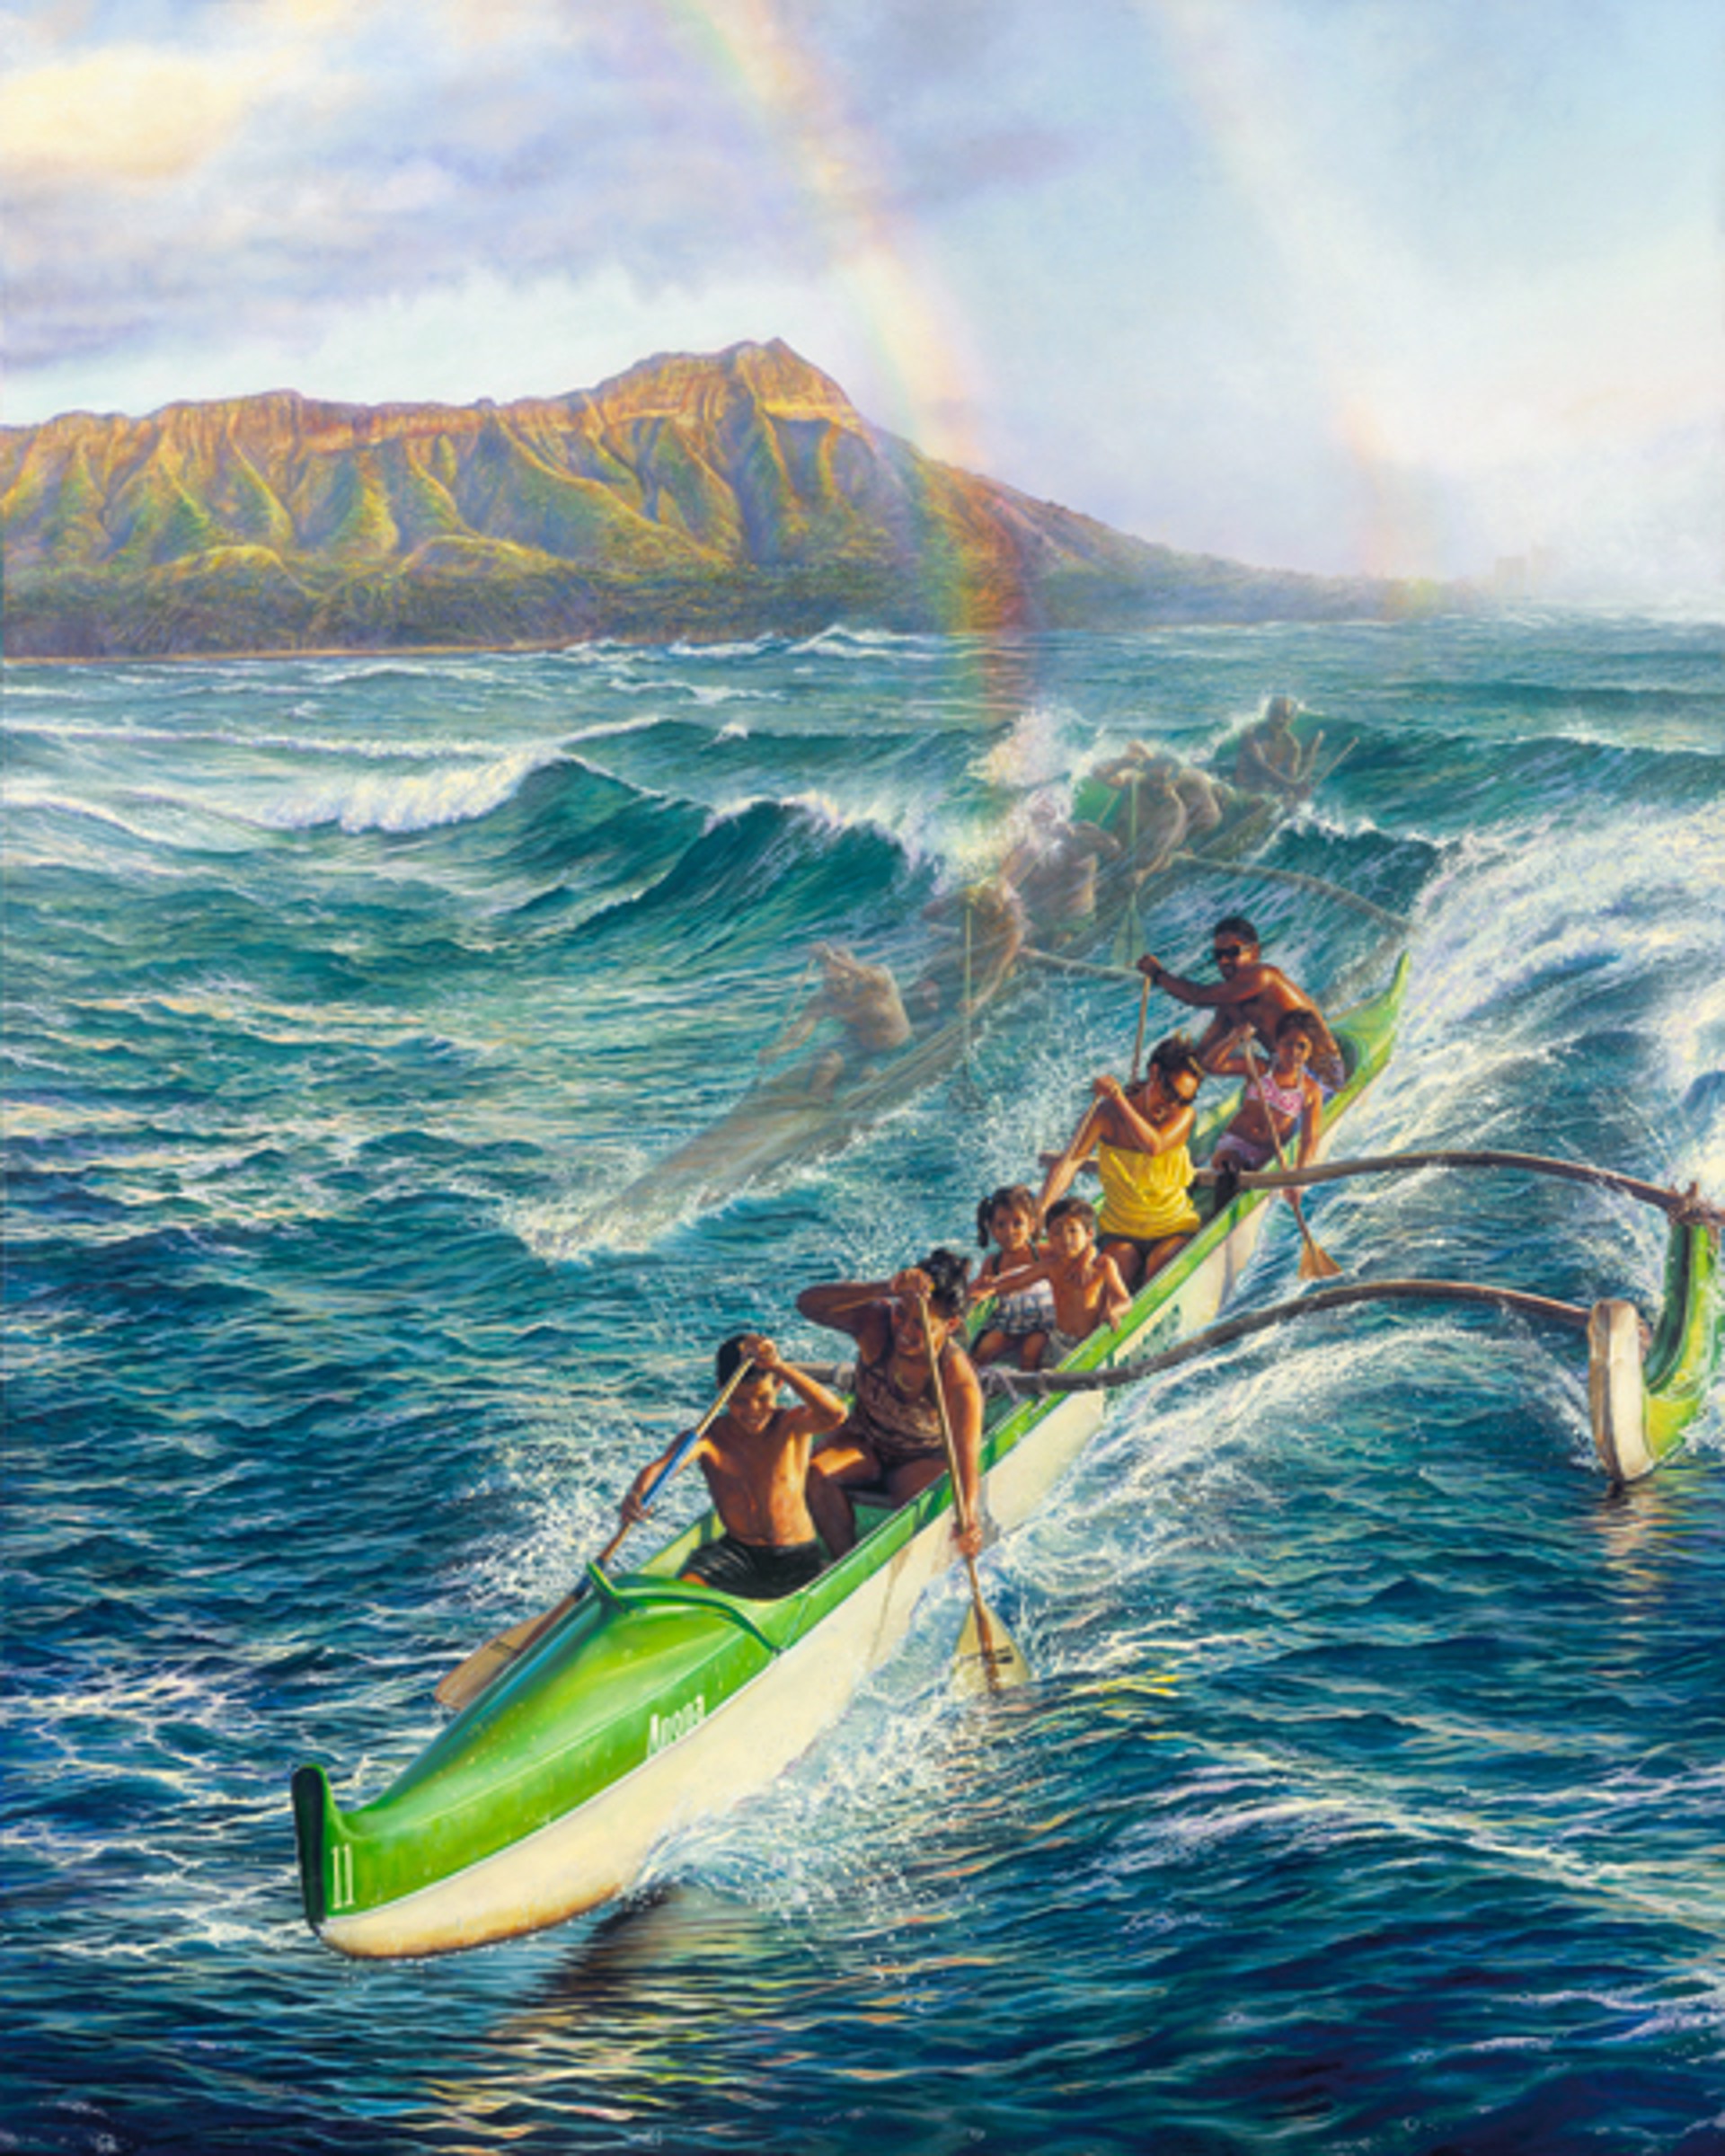 Surfing Canoes - Ke Ano'ano o ke 'Anuenue (AP) by Leohone Magno